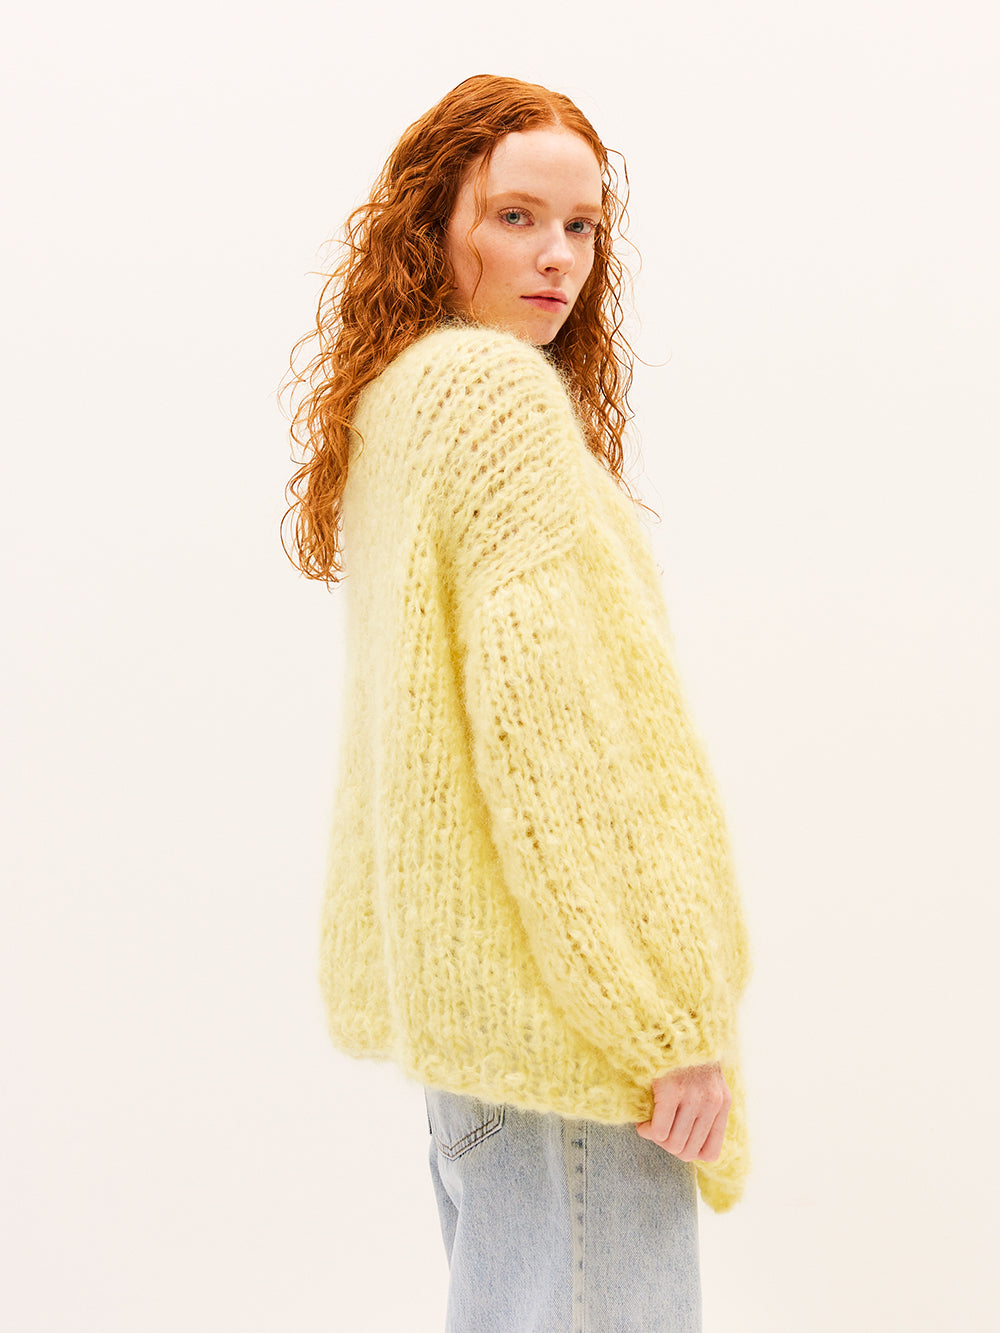 Anna Cardigan Knit Kit